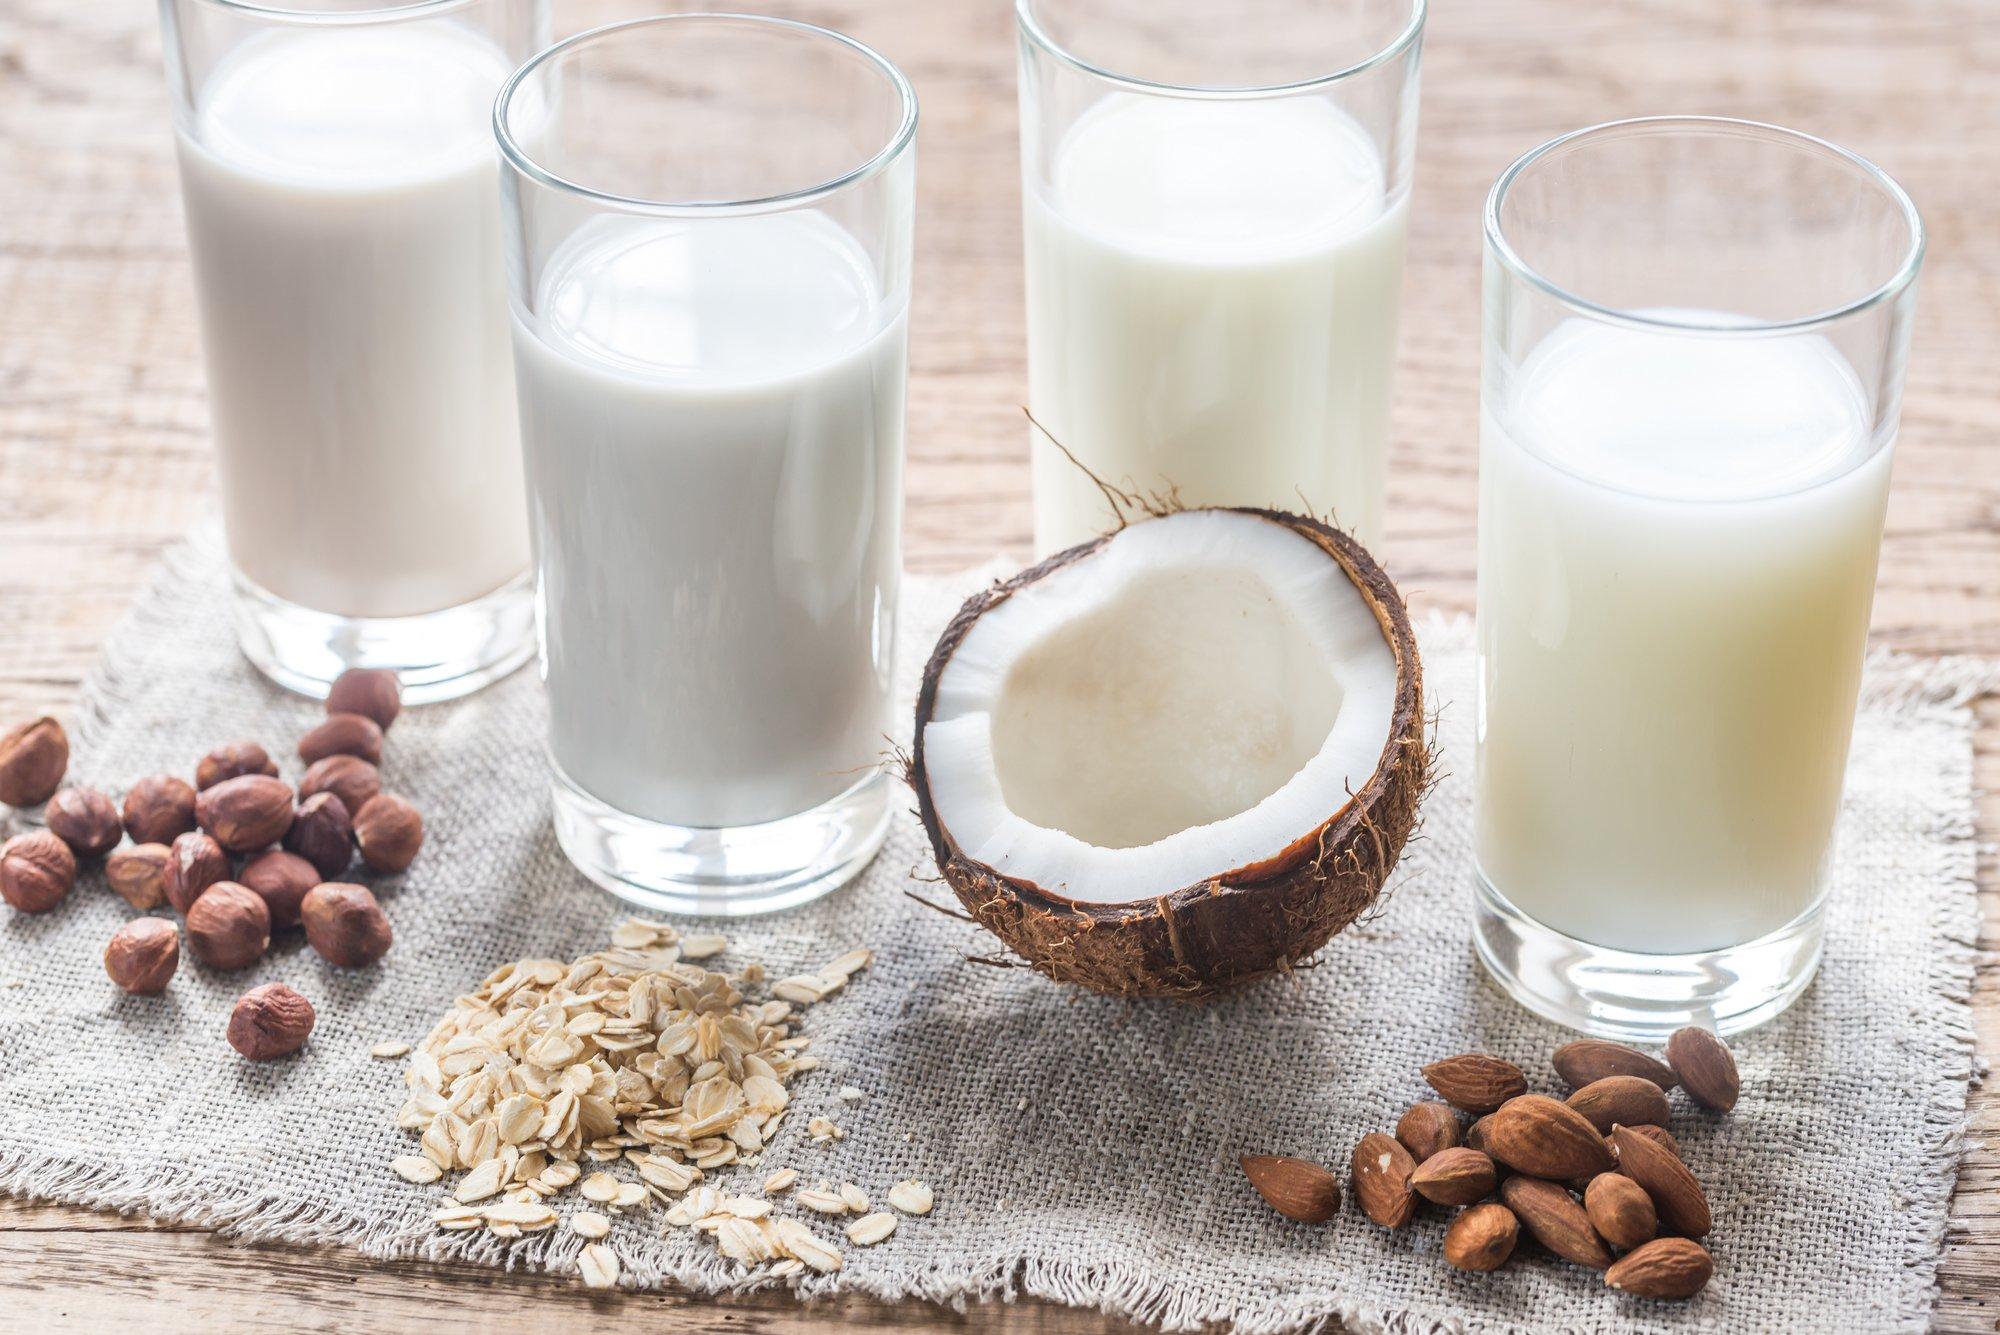 Augalinės pieno alternatyvos parduotuvėse, regis, tuoj išstums įprastą pieną: ar verta jas rinktis